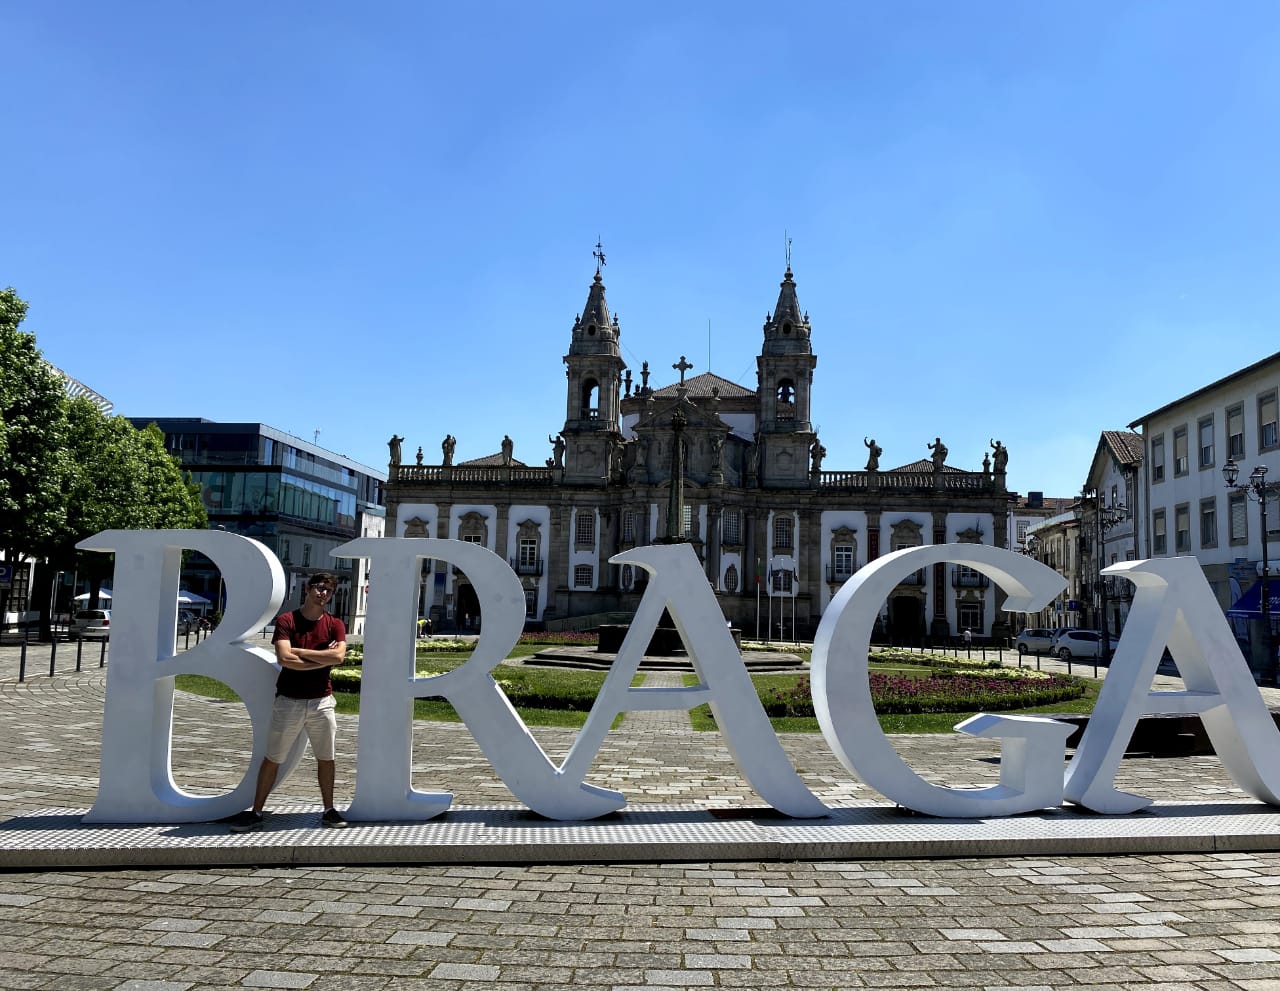 Nosso aluno também conheceu a cidade de Braga